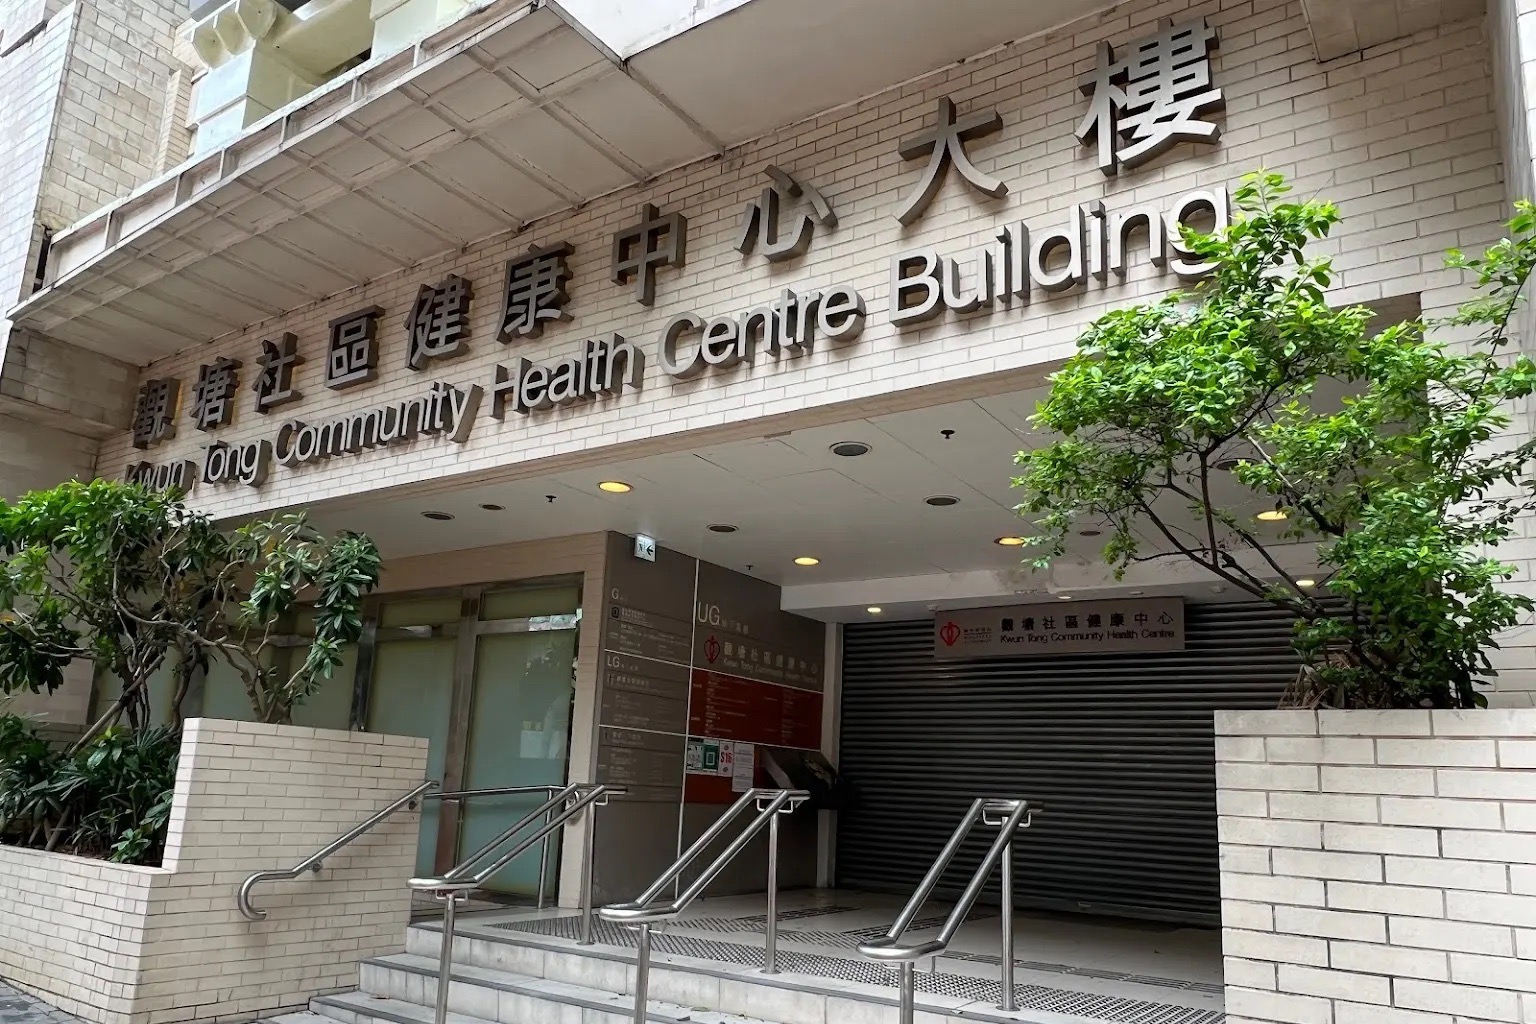 兩婦觀塘社區健康中心女廁打鬥釀命案 79歲老婦頭頸中刀身亡